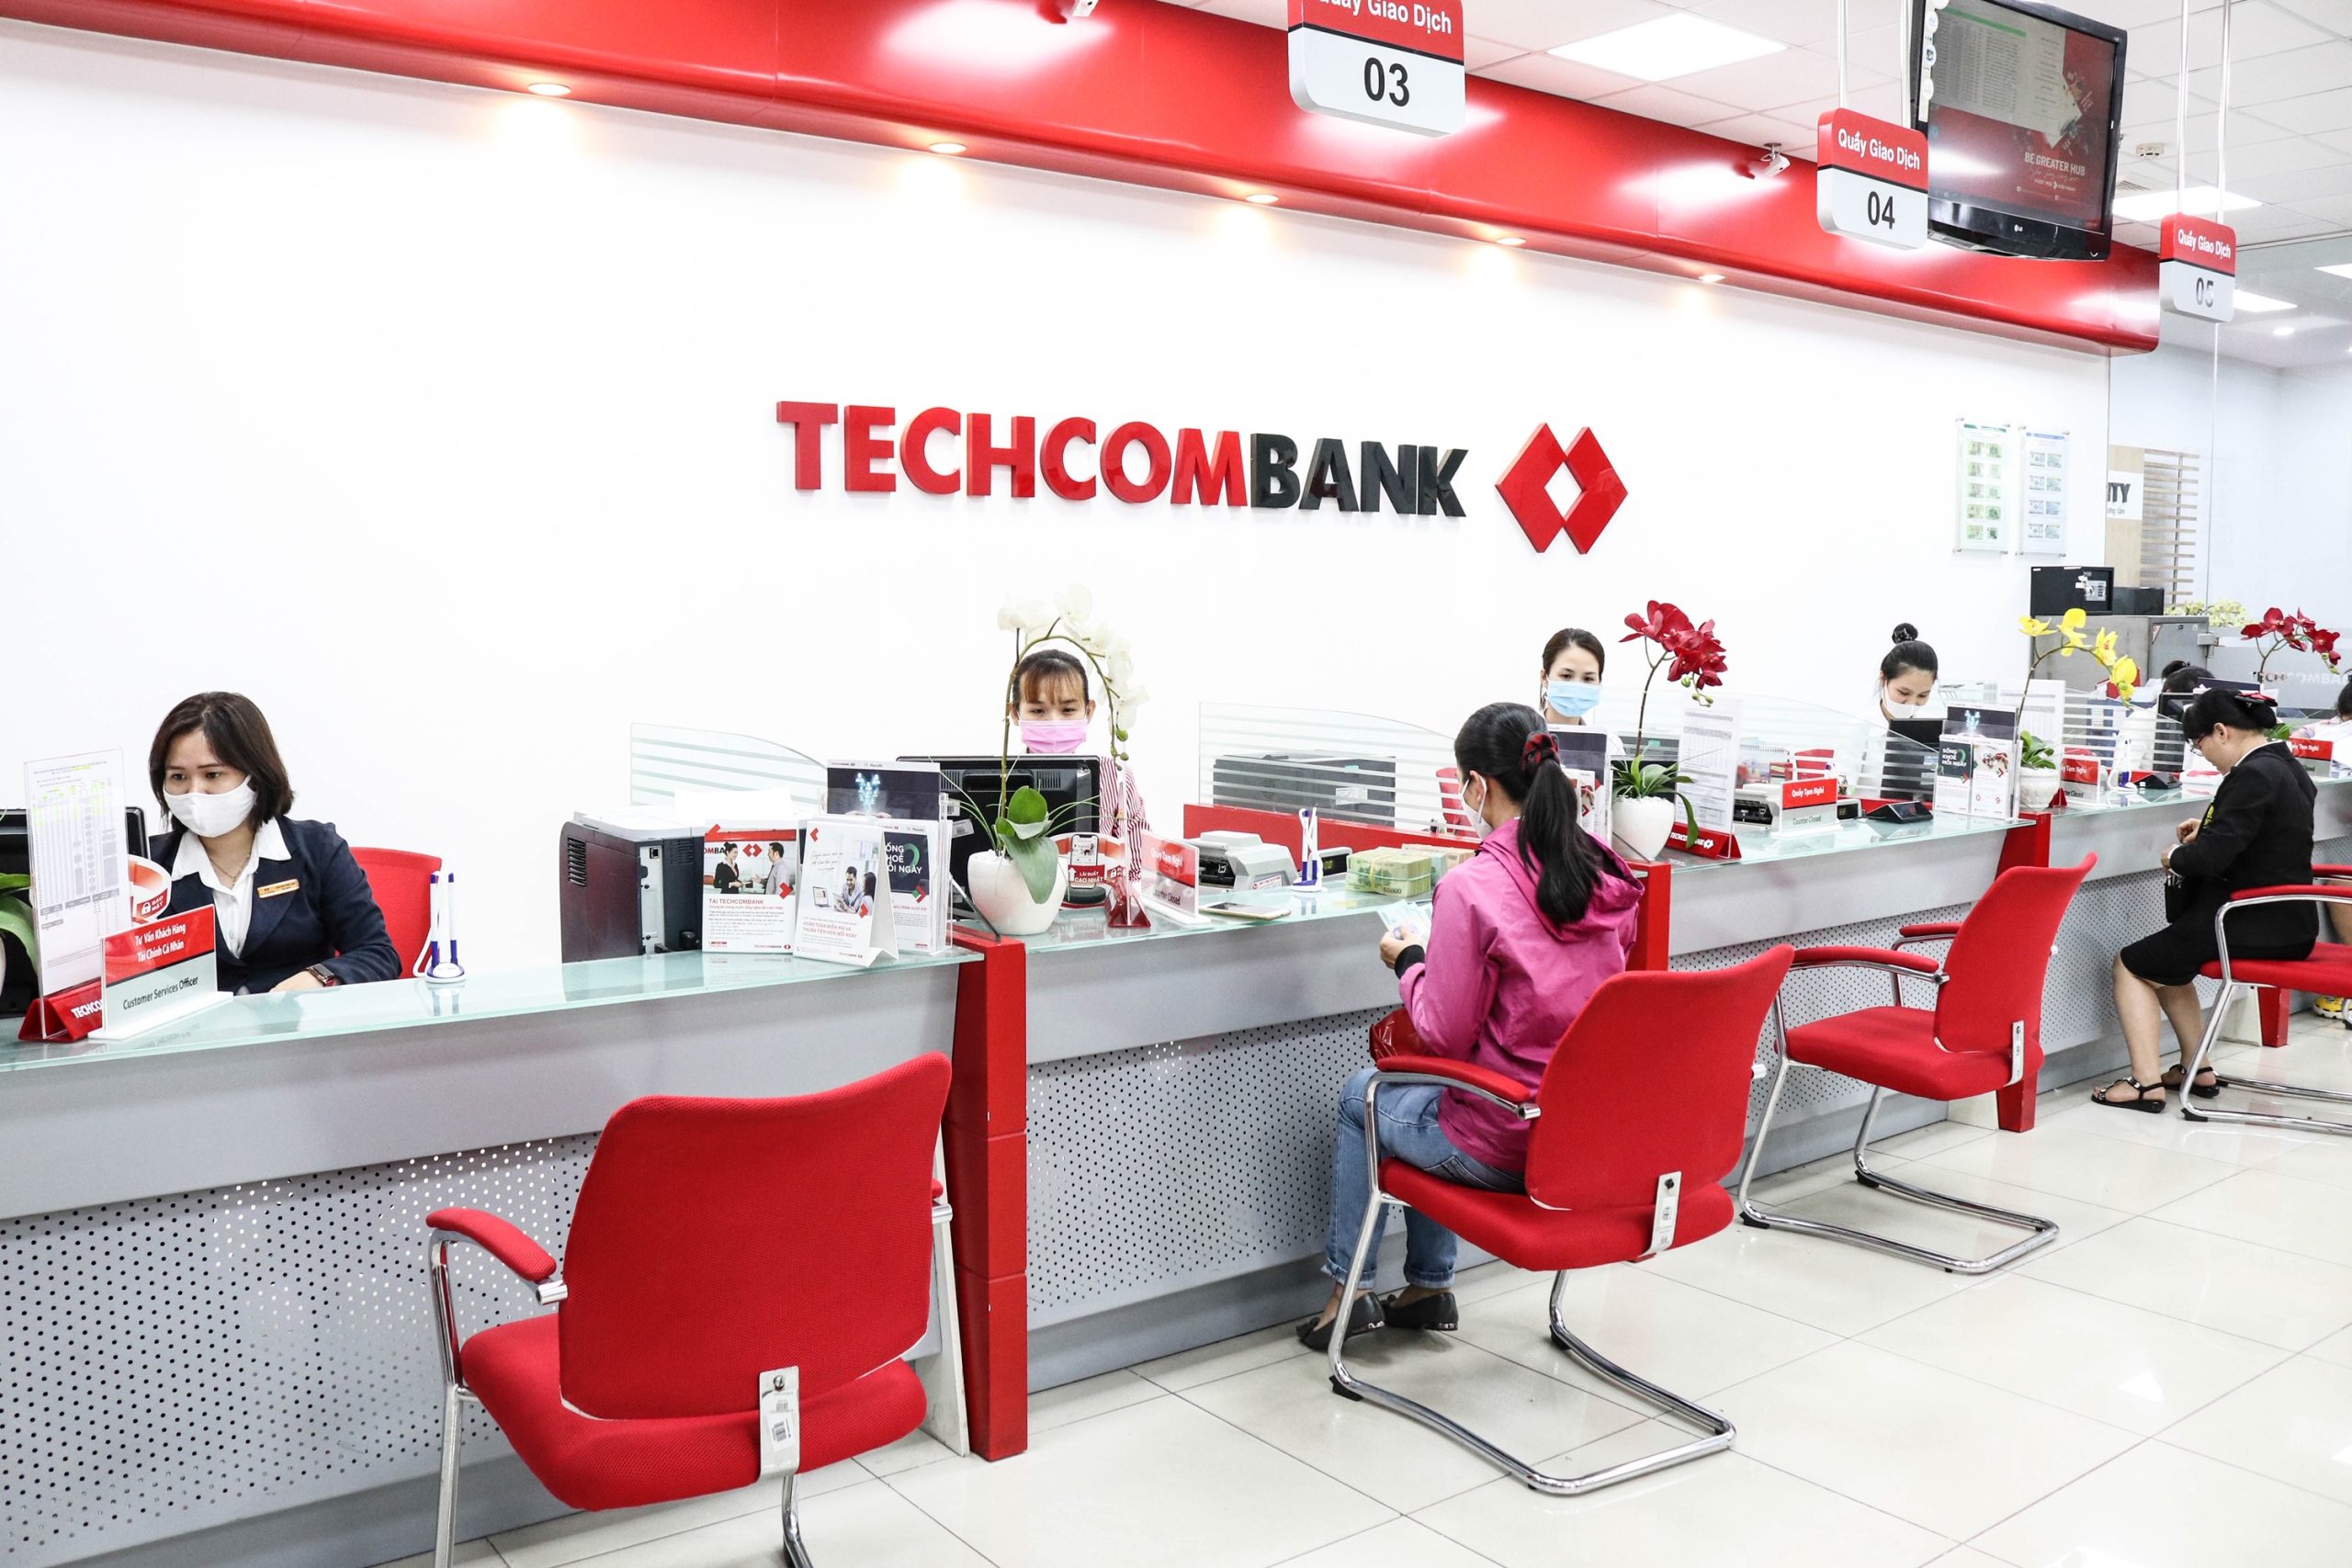 cach-nang-han-muc-the-tin-dung-techcombank